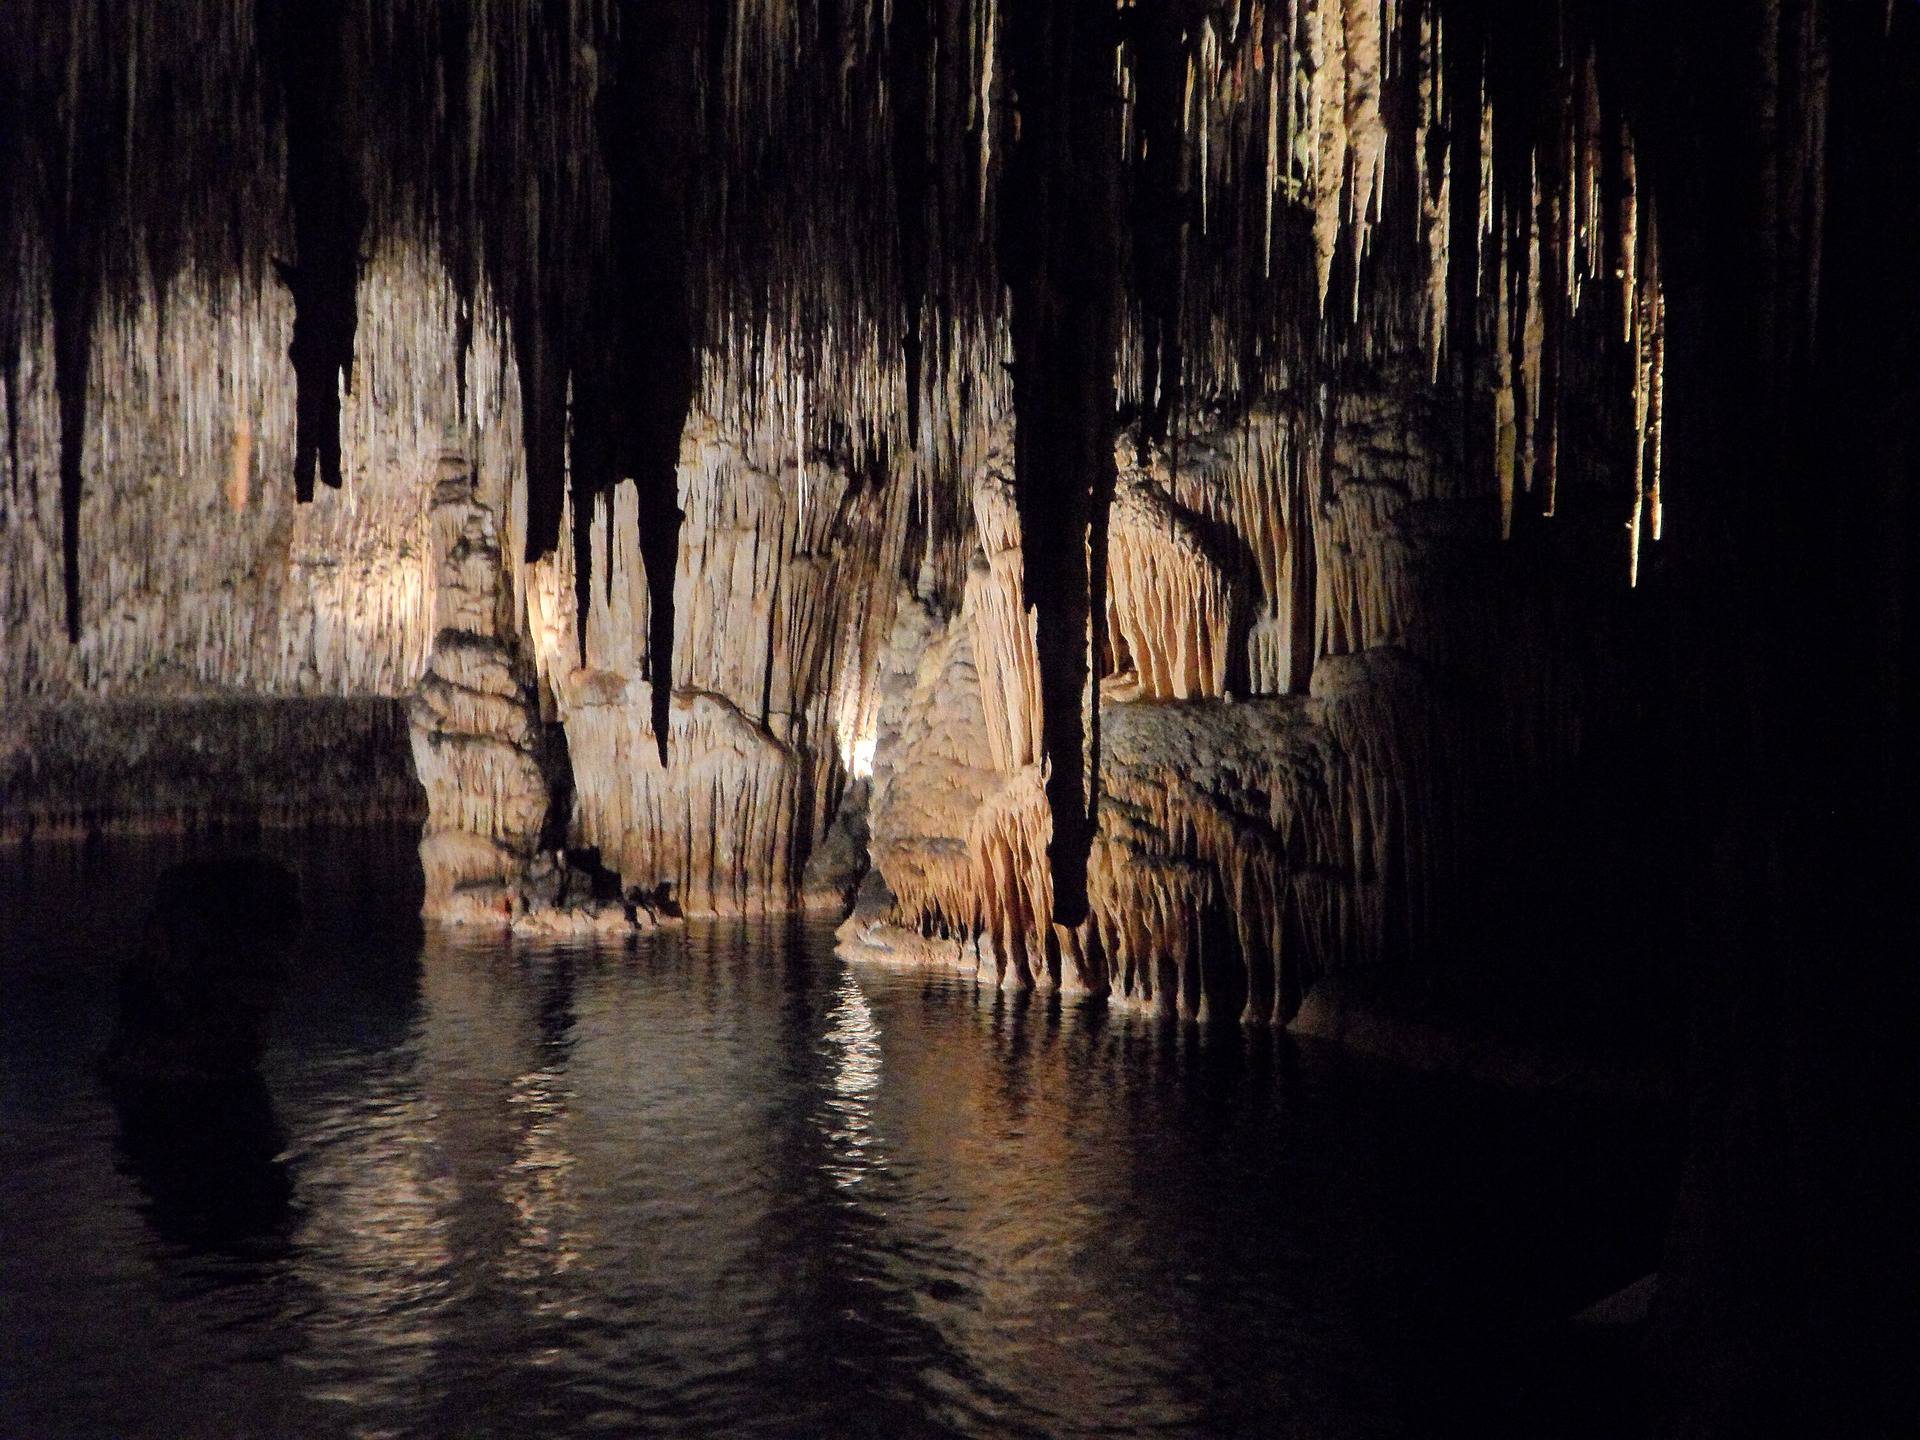 Σπήλαιο των Λιμνών: Μια διαφορετική εμπειρία στα Καλάβρυτα